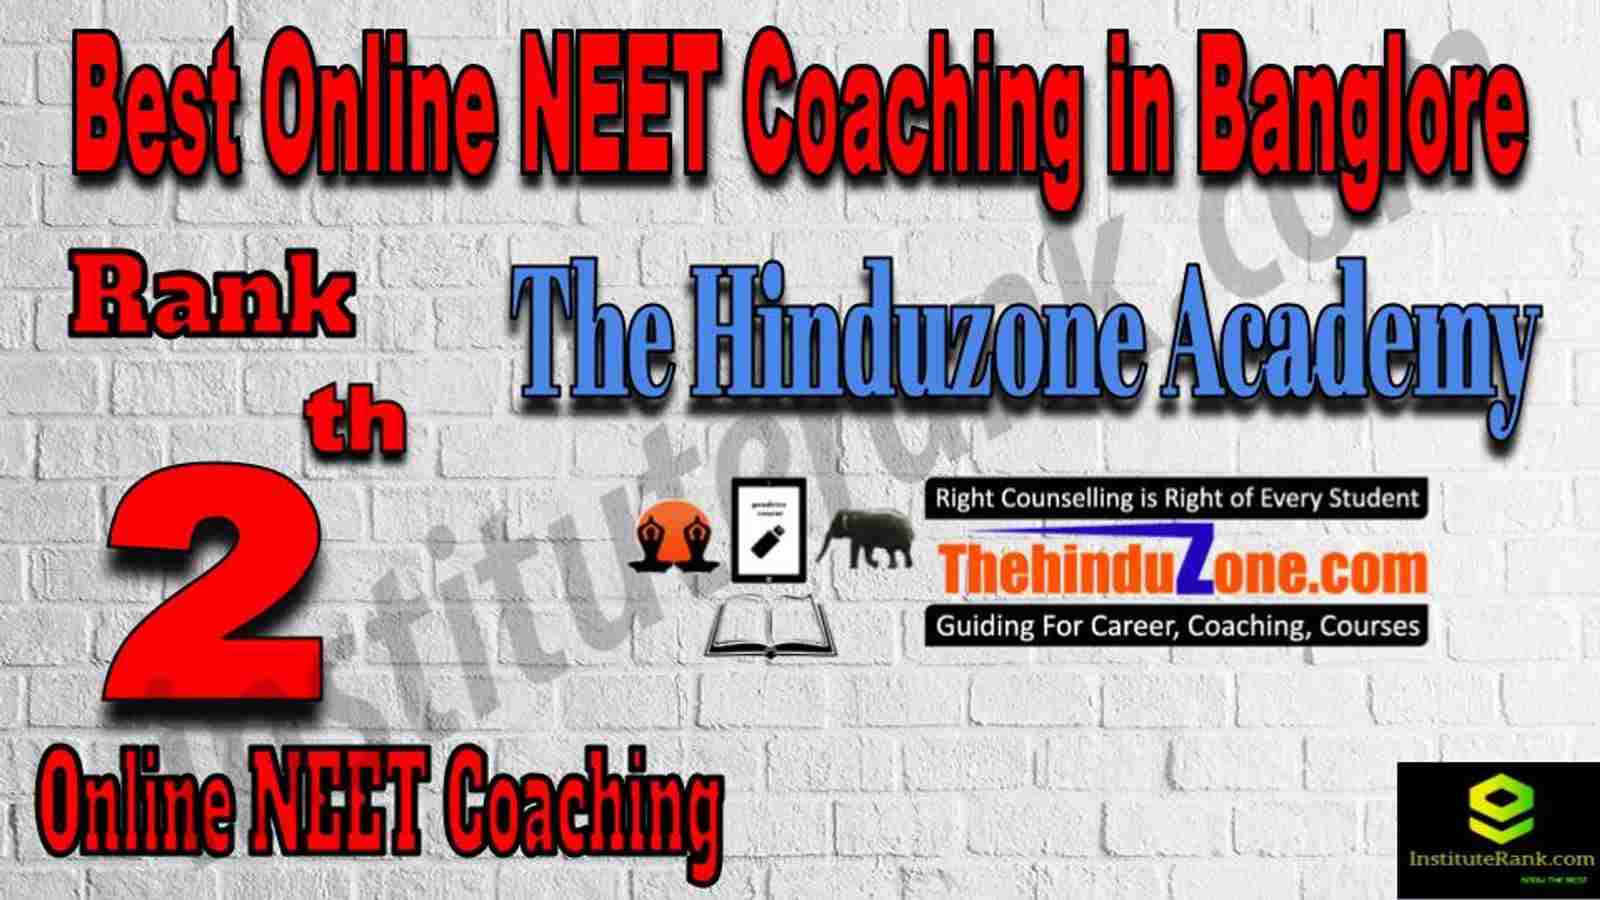 Rank 2 Best Online NEET Coaching in Banglore